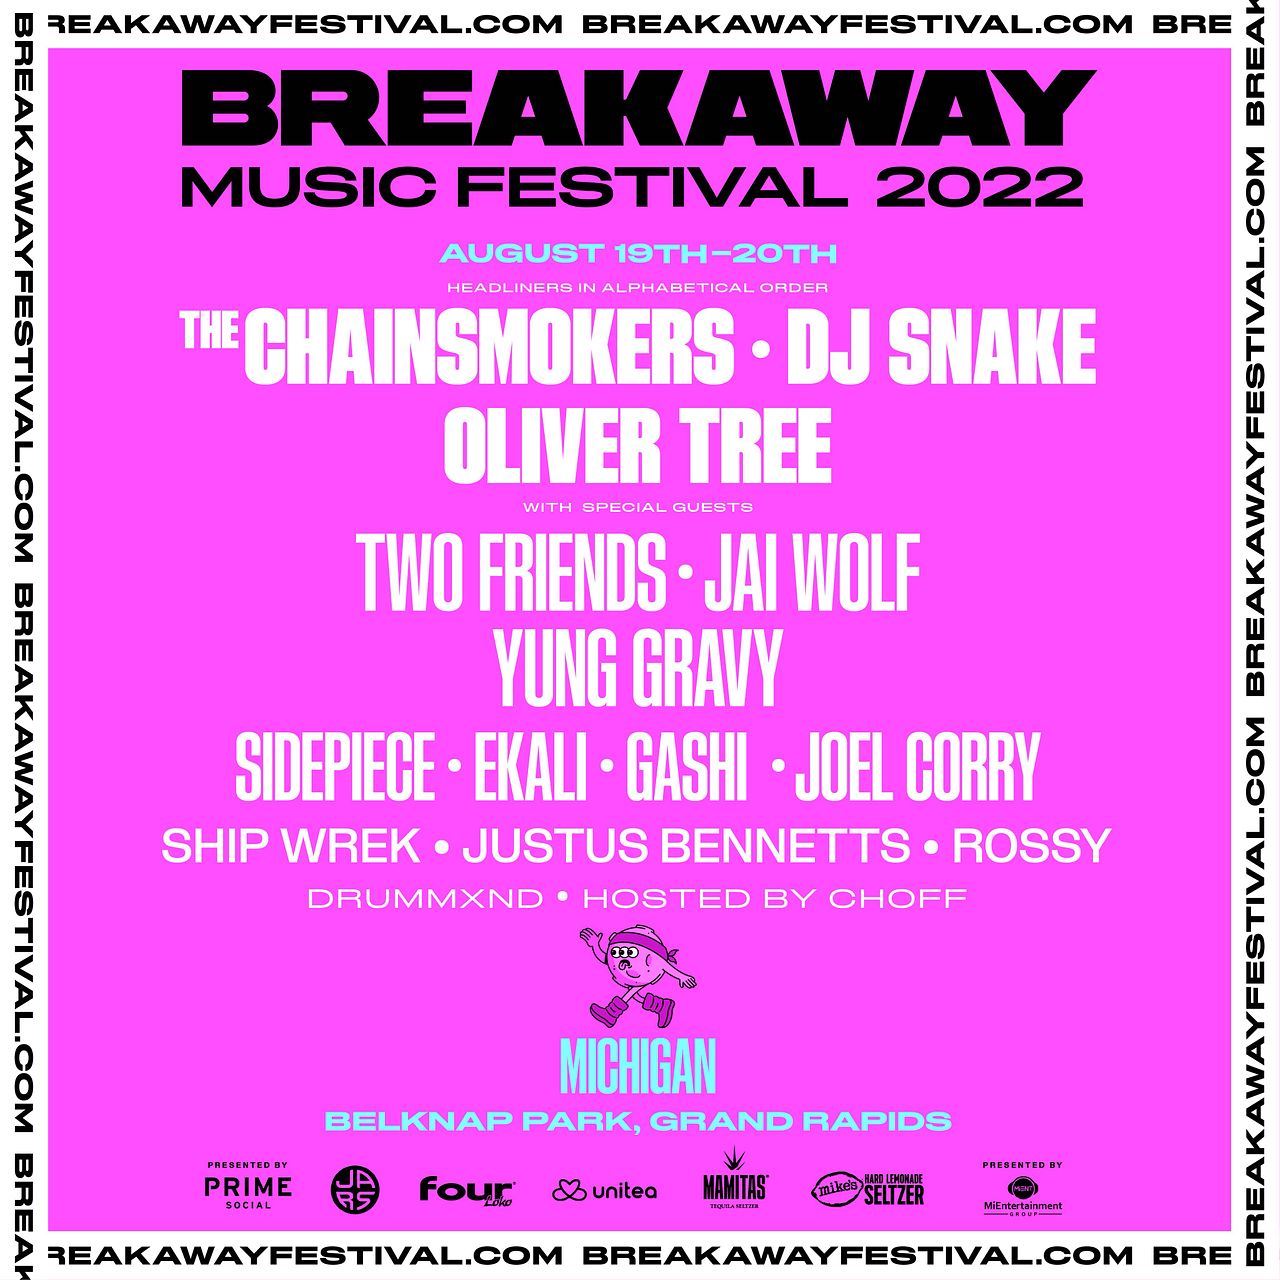 Breakaway Music Festival Michigan 2022 Tickets at Belknap Park in